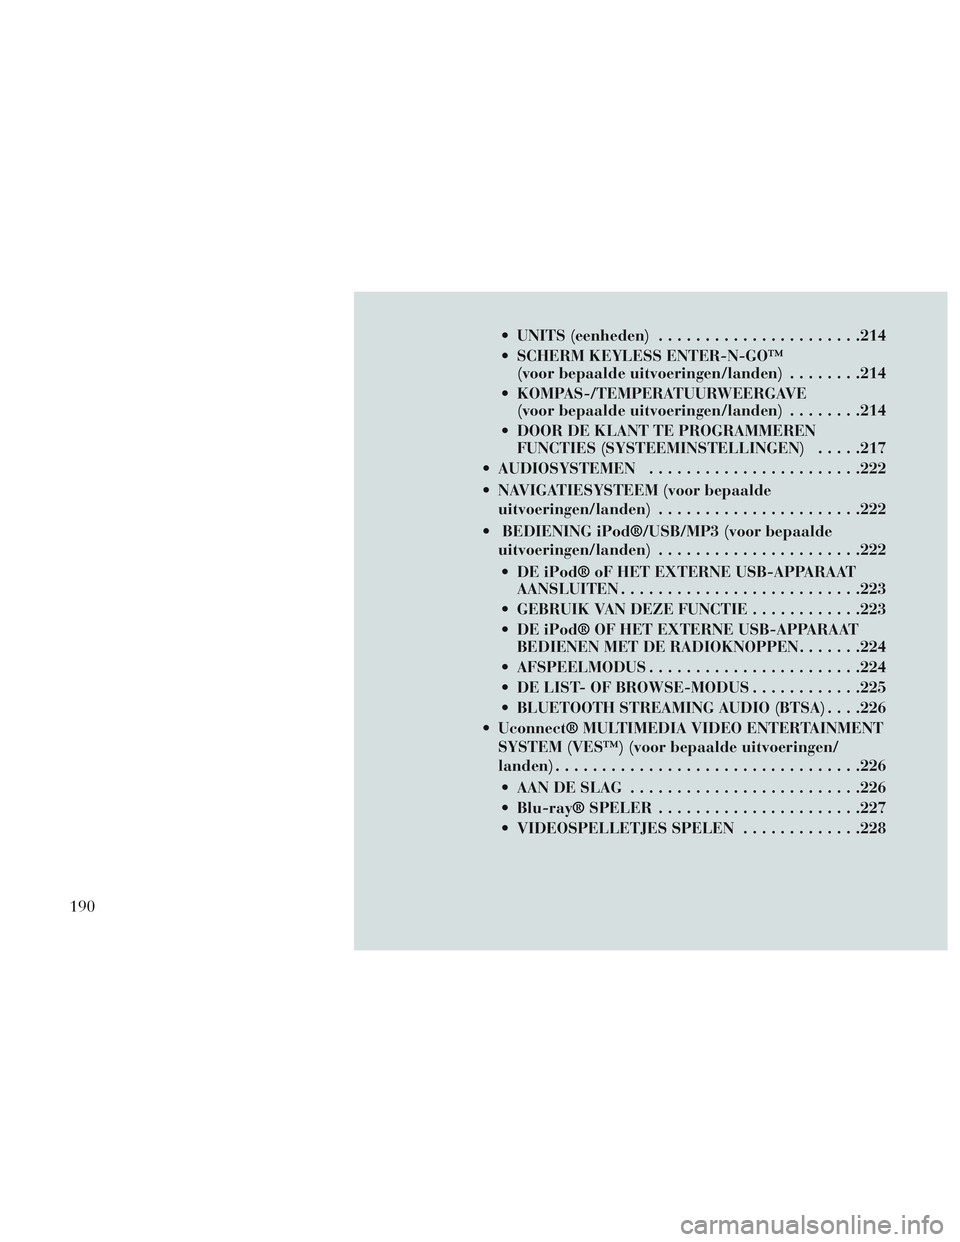 Lancia Voyager 2014  Instructieboek (in Dutch)  UNITS (eenheden)..................... .214
 SCHERM KEYLESS ENTER-N-GO™ (voor bepaalde uitvoeringen/landen) ........214
 KOMPAS-/TEMPERATUURWEERGAVE (voor bepaalde uitvoeringen/landen) ........214
 